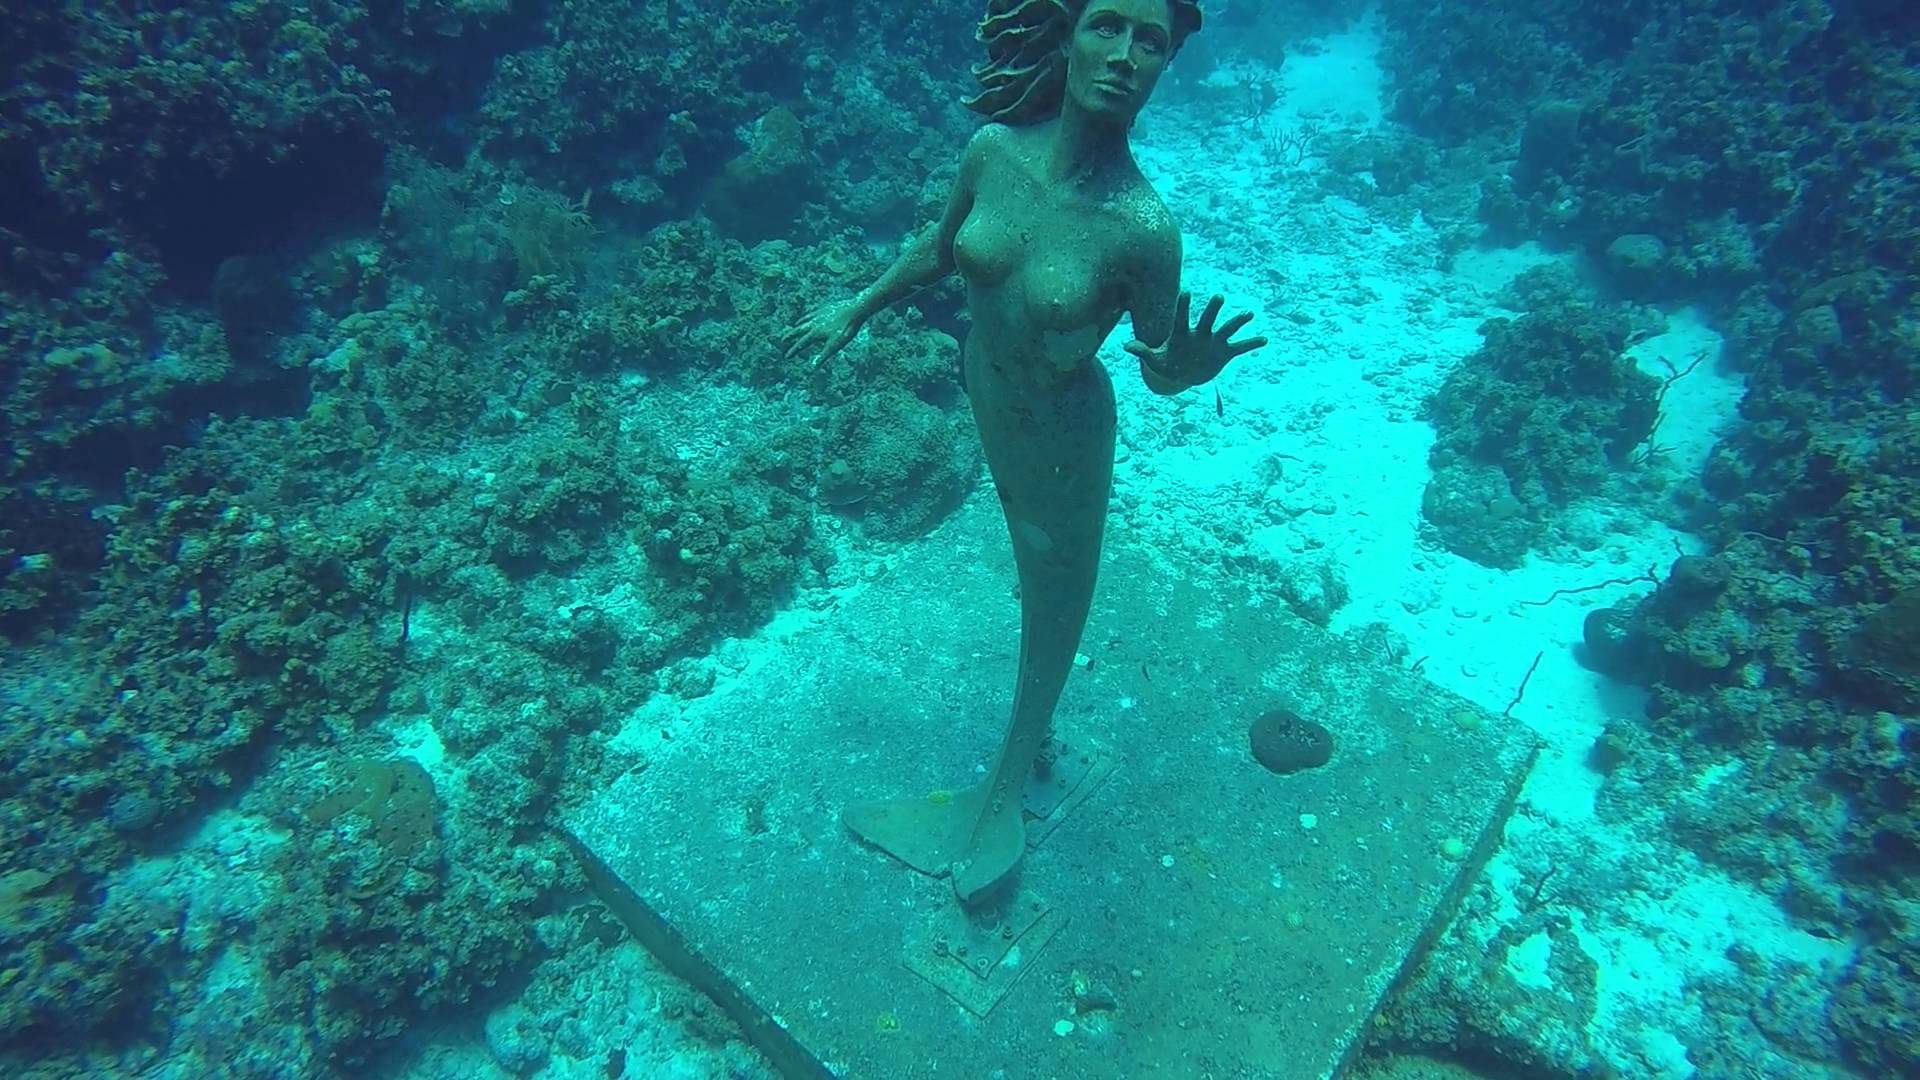 General 1920x1080 mermaids underwater statue sea water turquoise